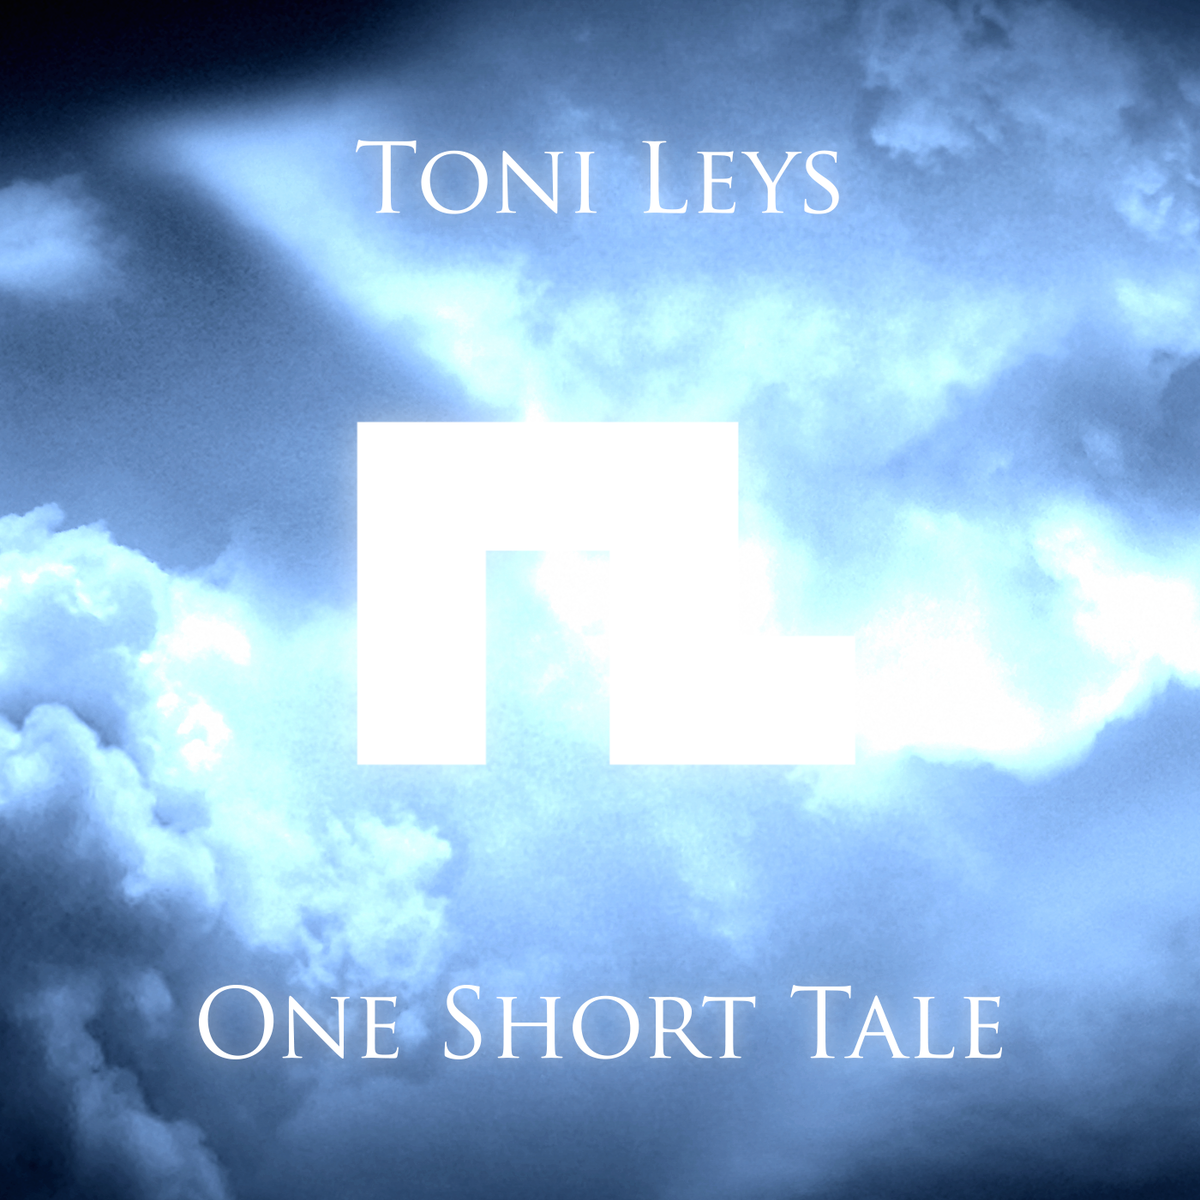 Short tale. Toni Leys - Orbits.